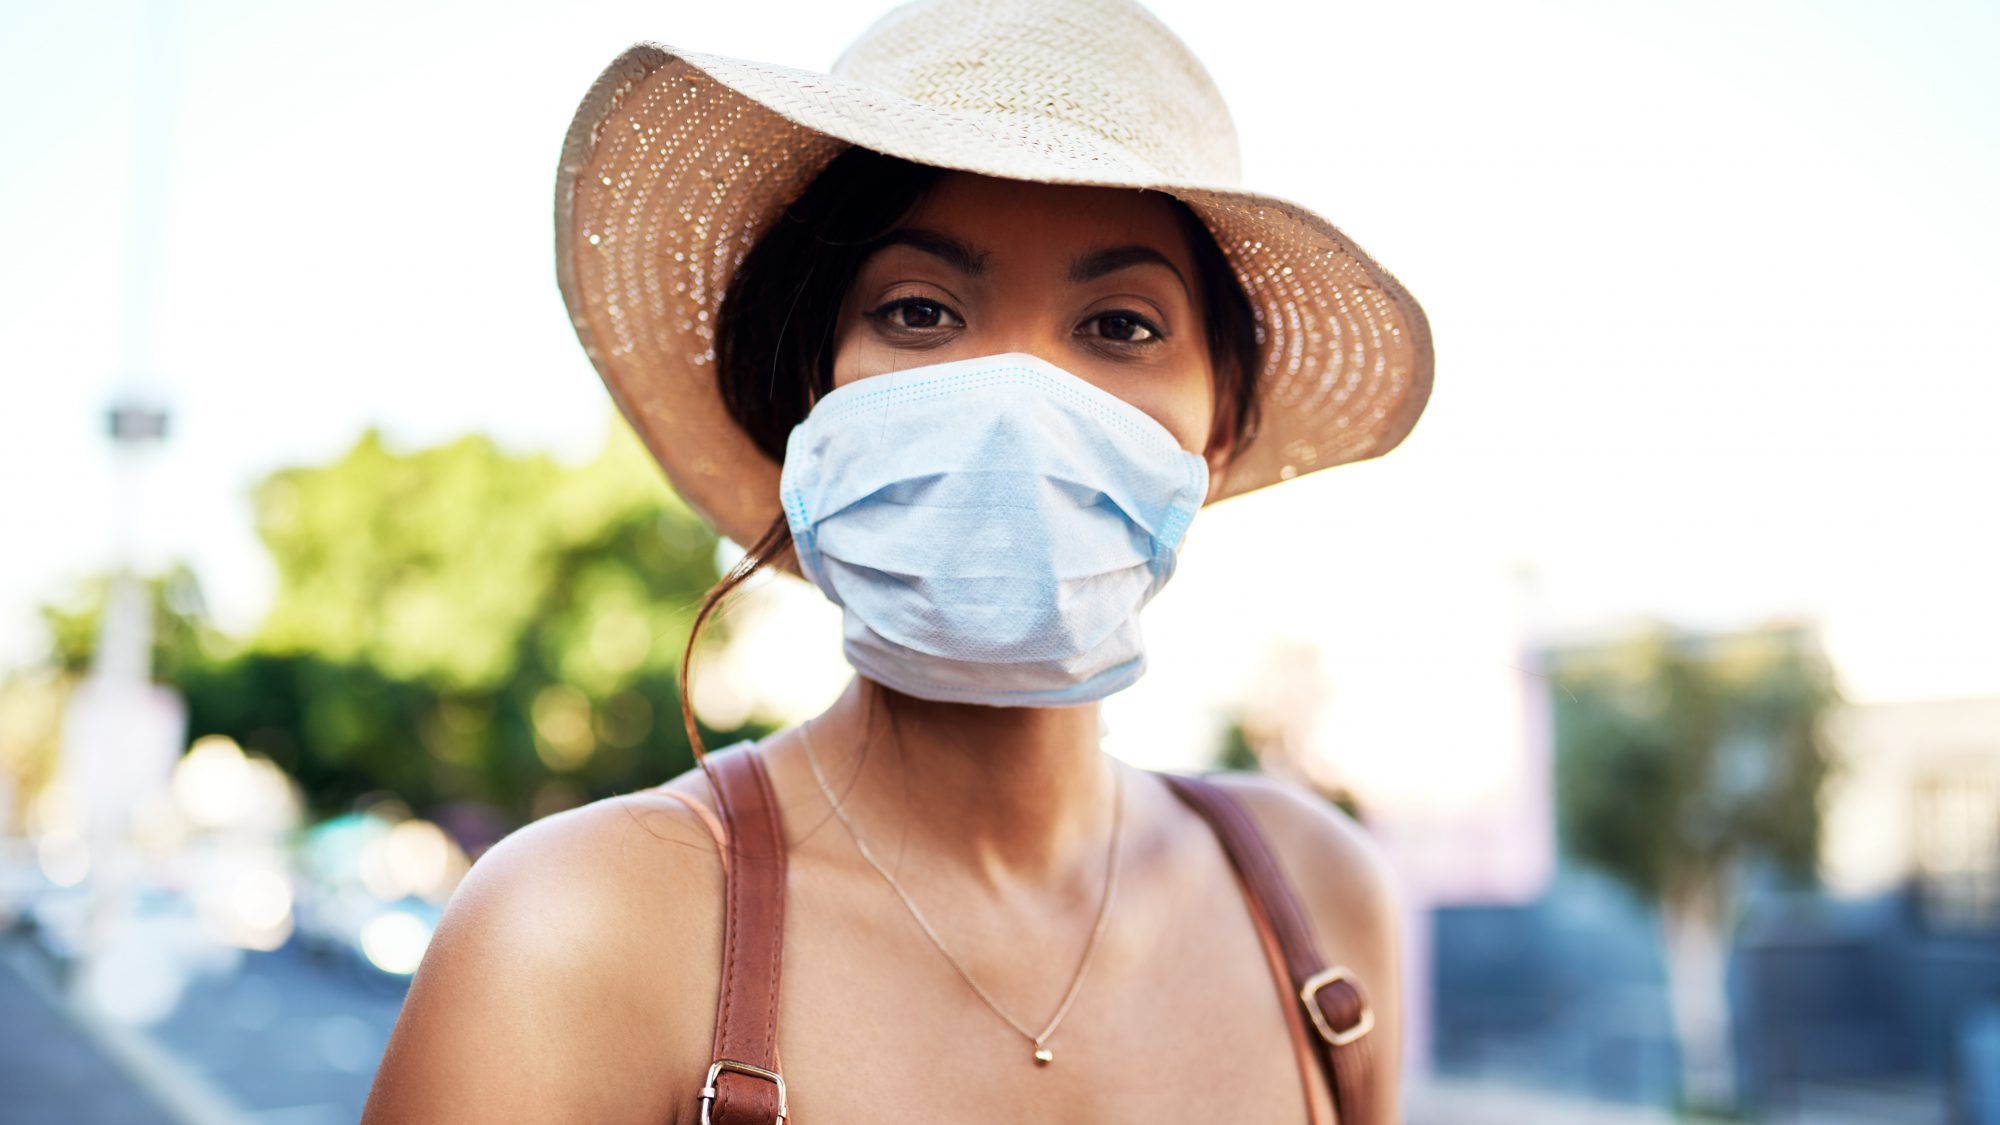 safe-practices-coronavirus: kvinna med ansiktsmask och hatt